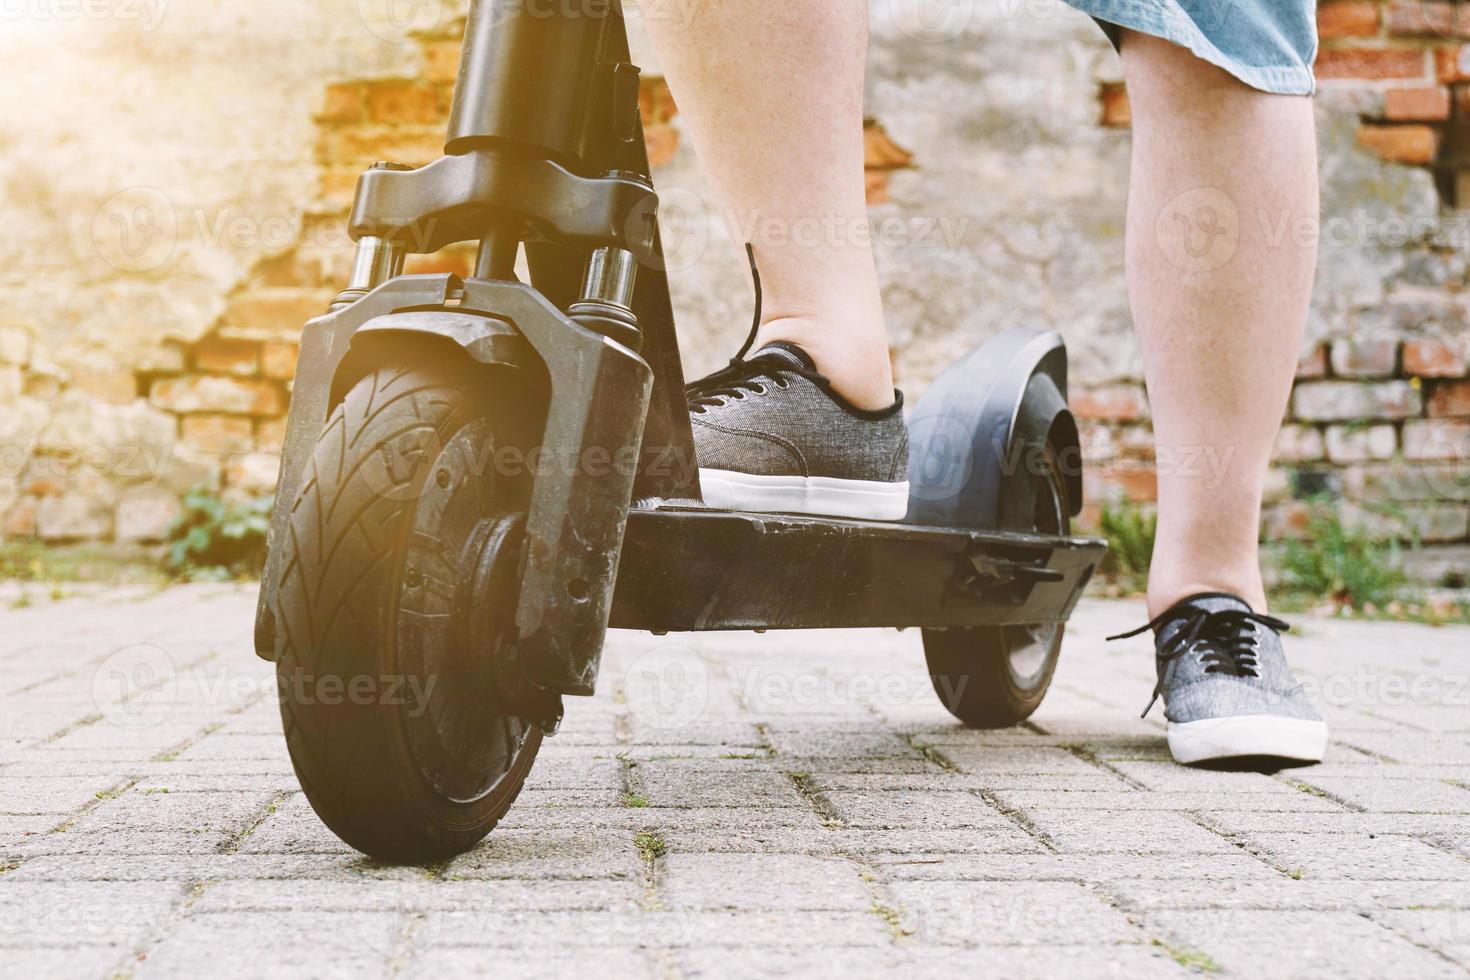 benen van onherkenbare persoon met elektrische step of e-scooter foto